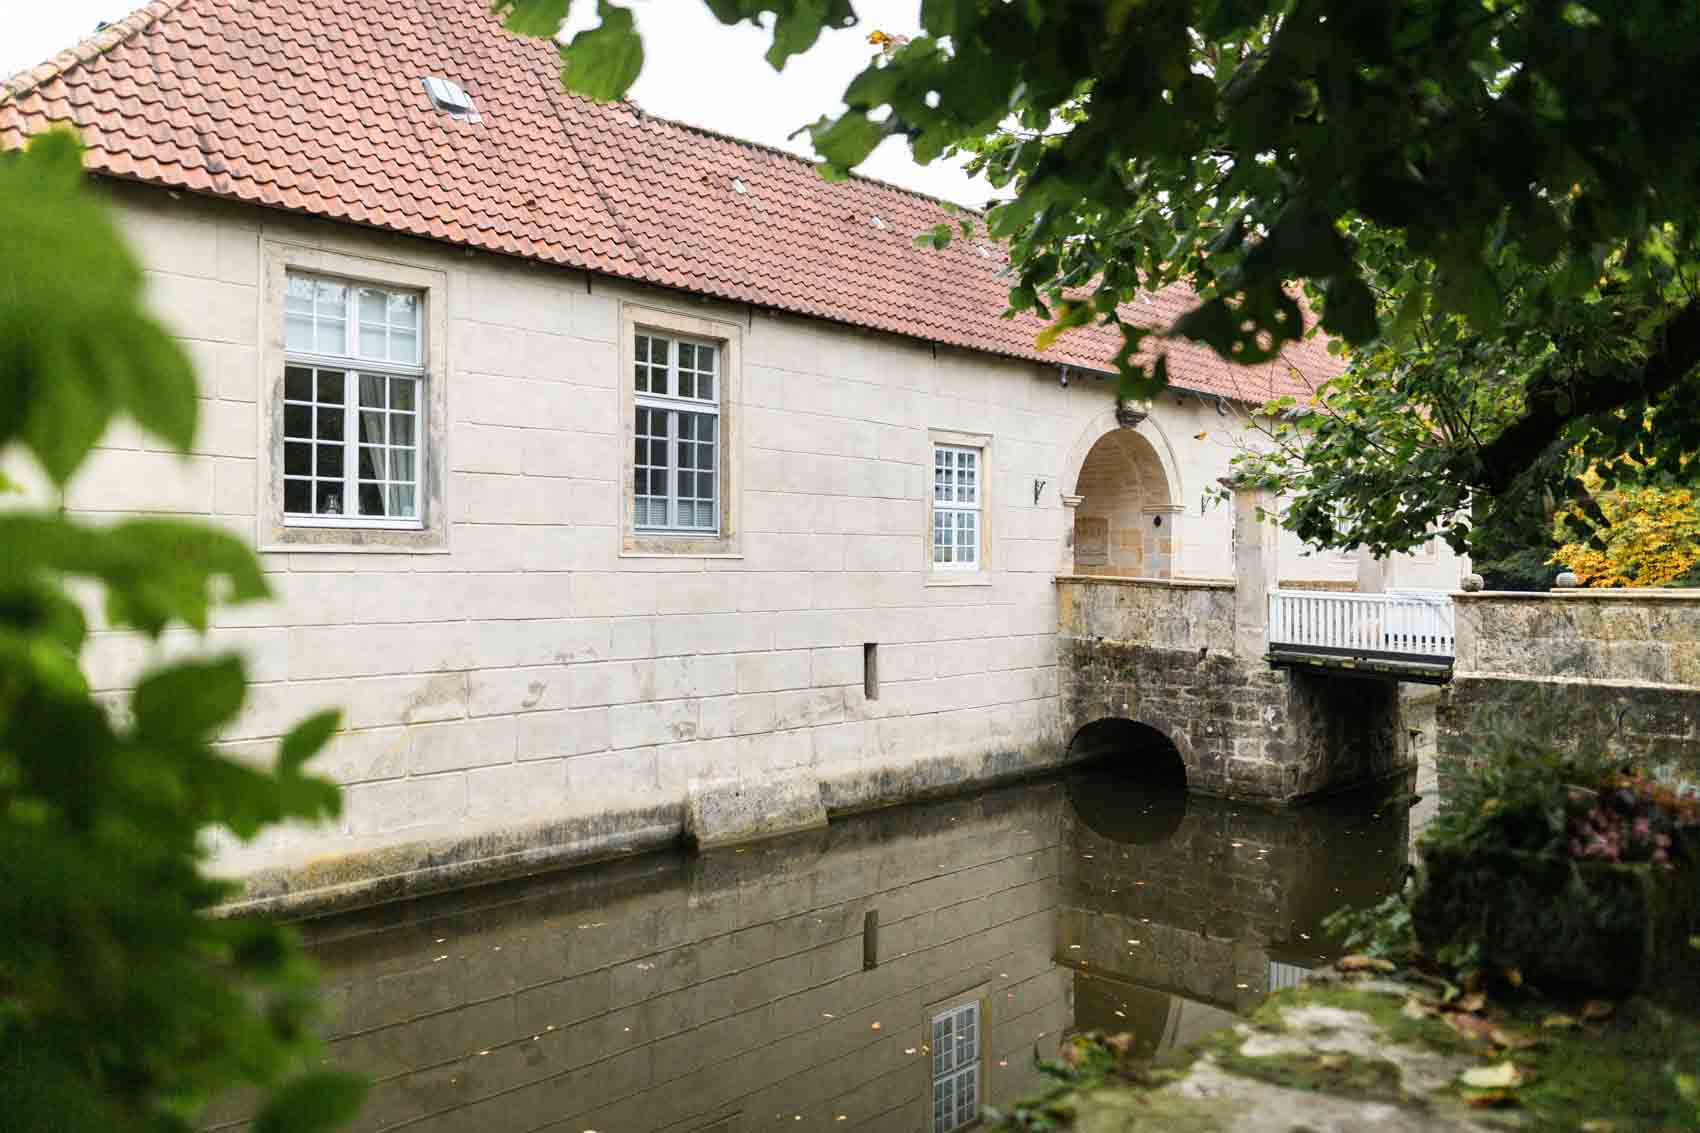 Eingangsbereich des Wasserschlosses Haus Marck in Tecklenburg mit Brücke und Wassergraben.